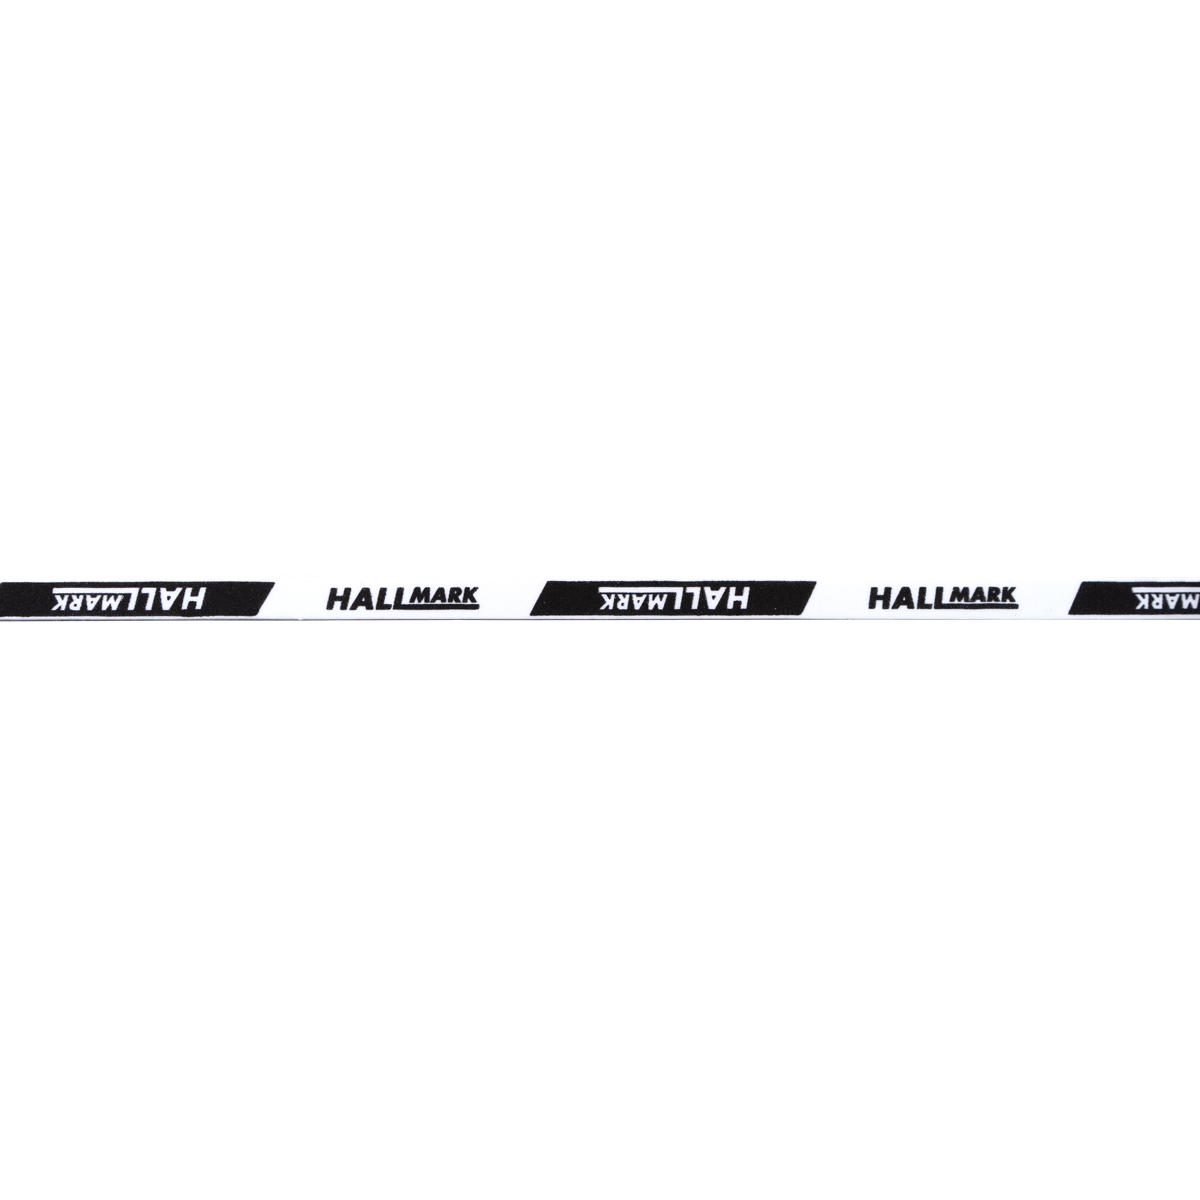 HALLMARK Kantenband 9mm für 1 Schläger schwarz/weiß